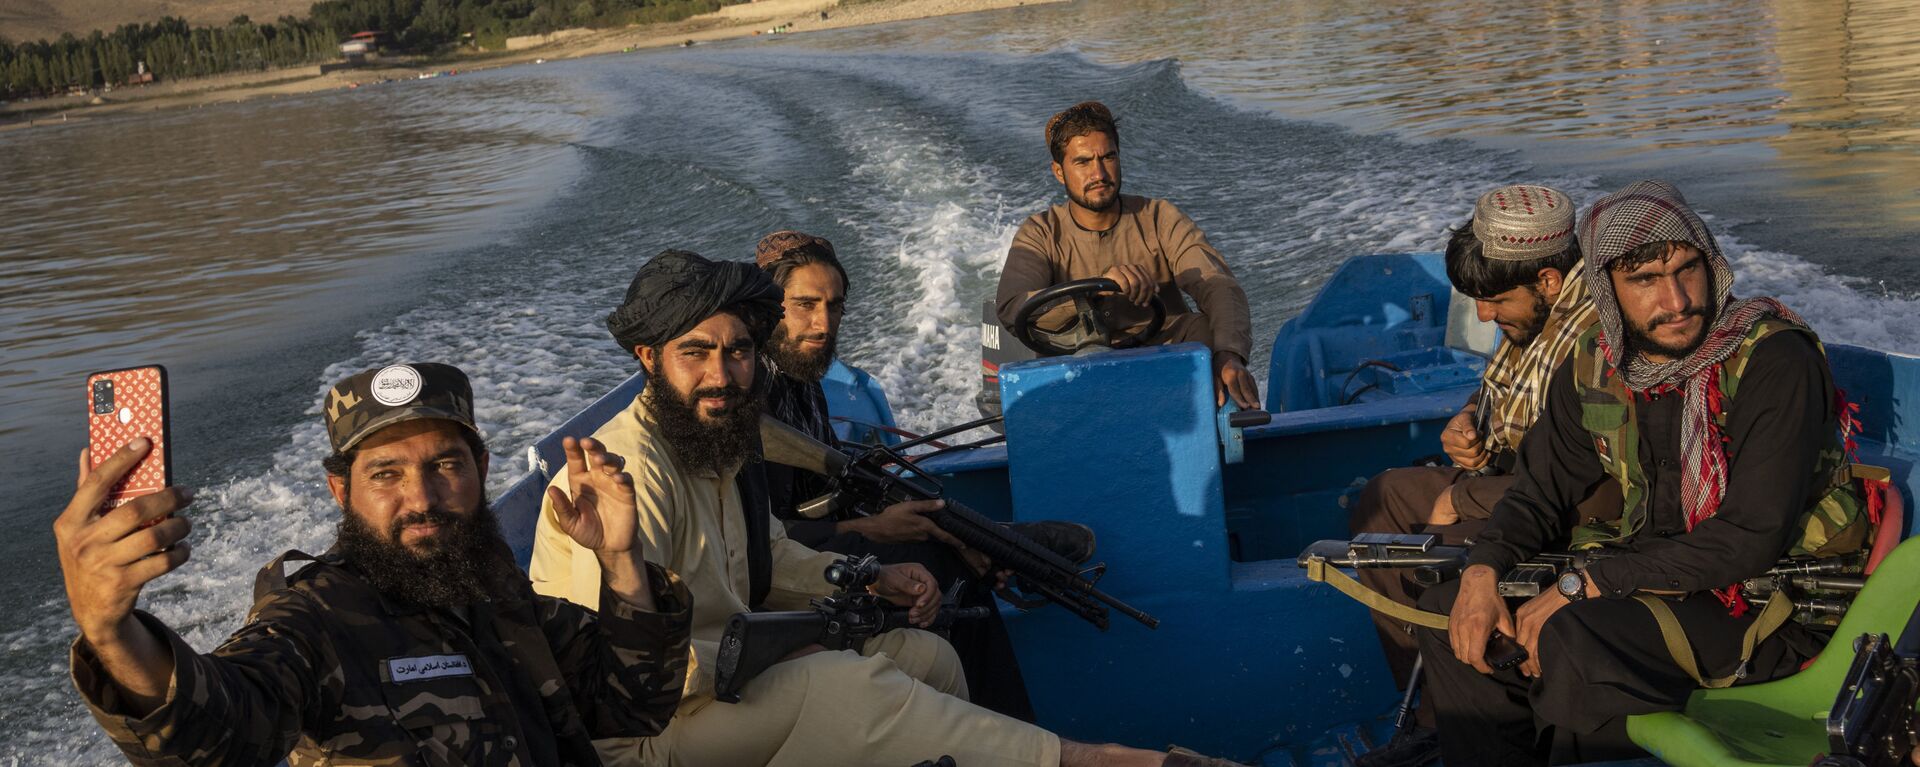 Бойцы Талибана наслаждаются прогулкой на лодке по плотине Карга, Афганистан - Sputnik Việt Nam, 1920, 01.11.2021